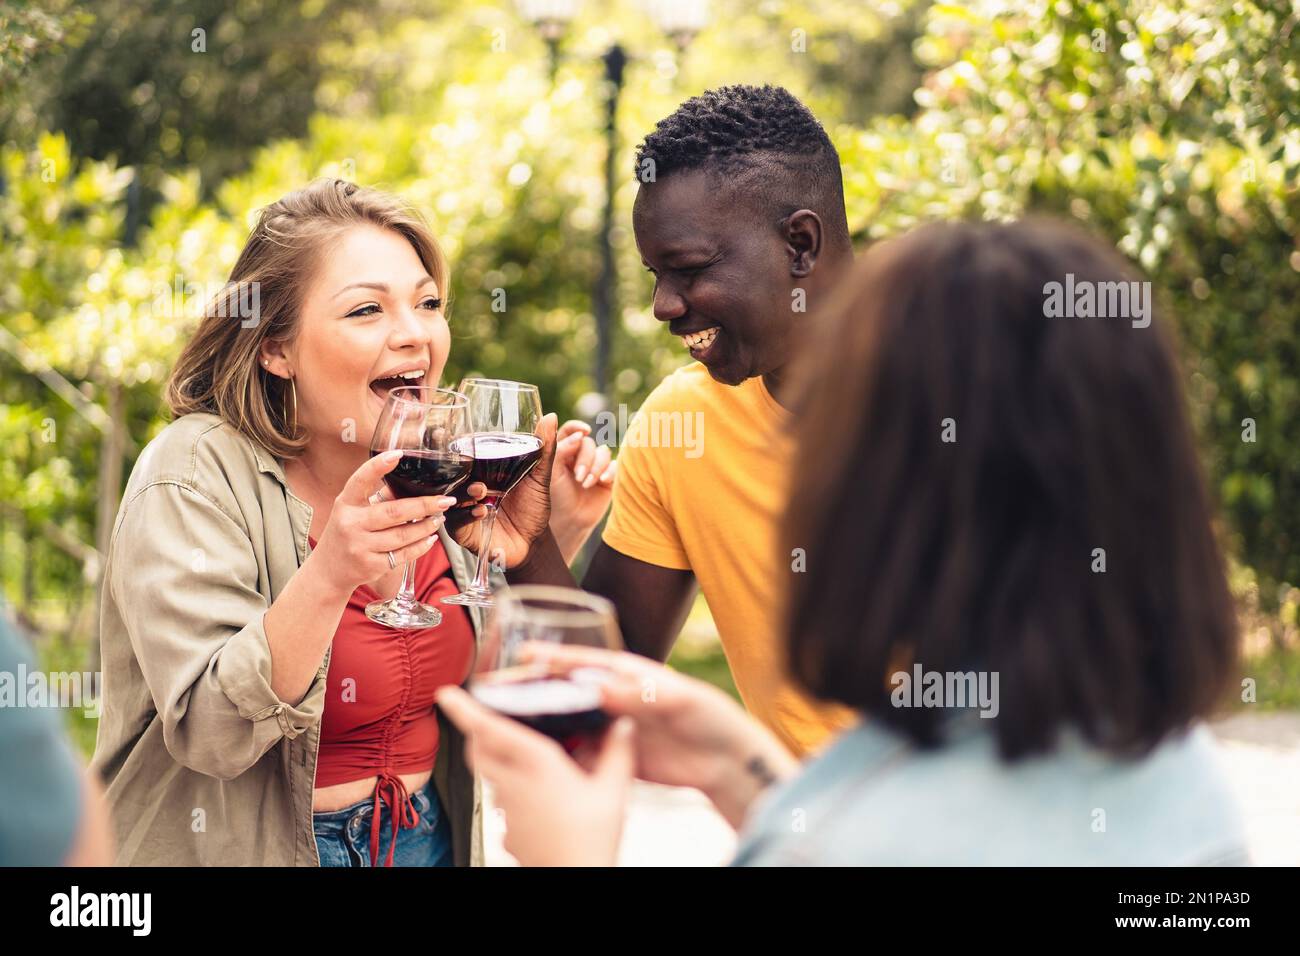 Eine kurvige junge Erwachsene Kaukasierin und ein junger afrikanischer Mann jubeln und lachen, während sie mit Rotwein anstoßen - vielfältige fröhliche Menschen Lebensstil Conc Stockfoto